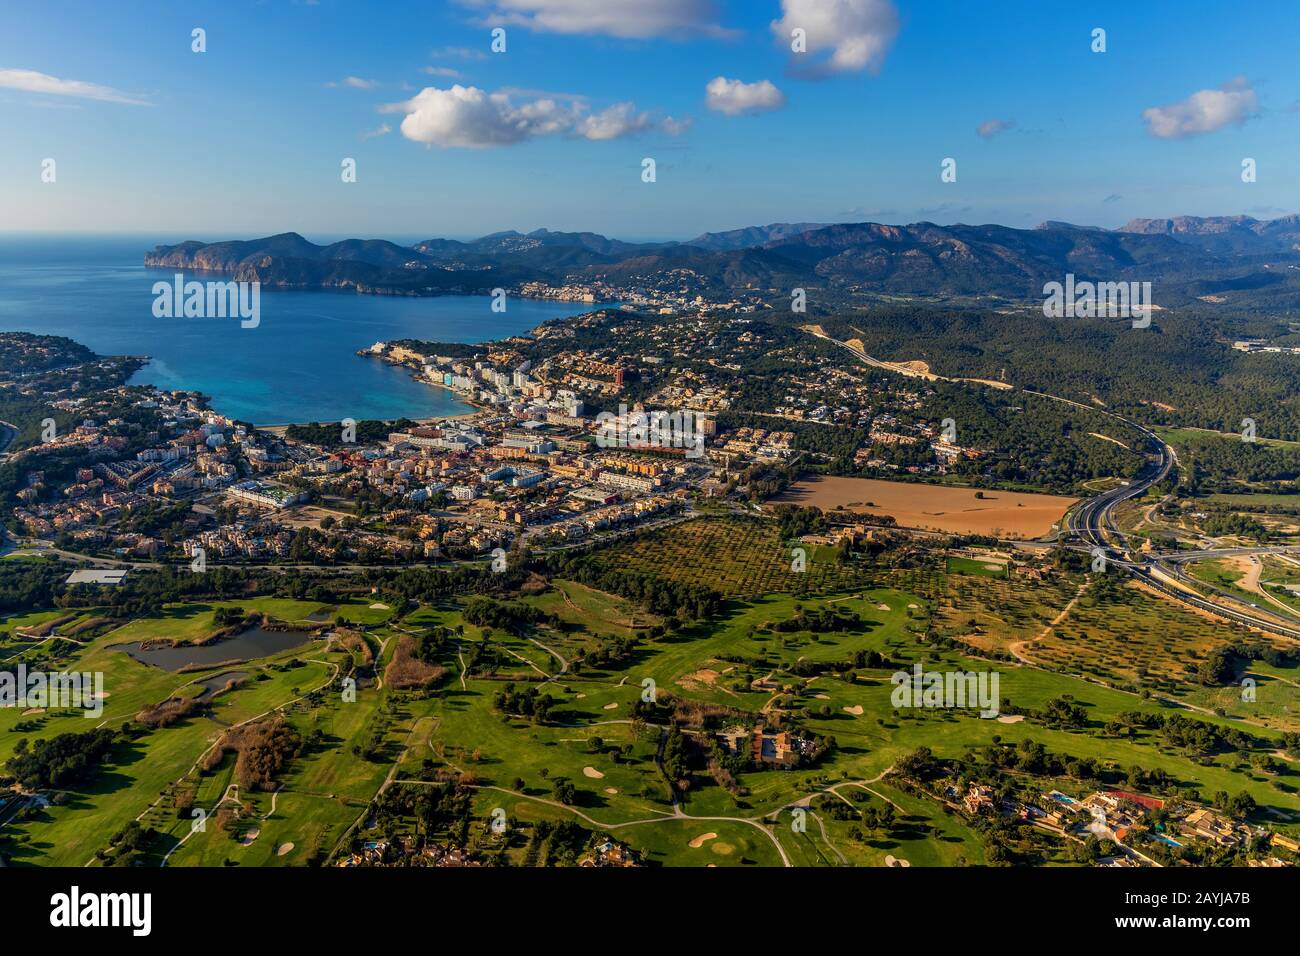 Santa Ponsa con campo de golf, 04.01.2020, vista aérea, España, Islas Baleares, Mallorca, Calvia Foto de stock